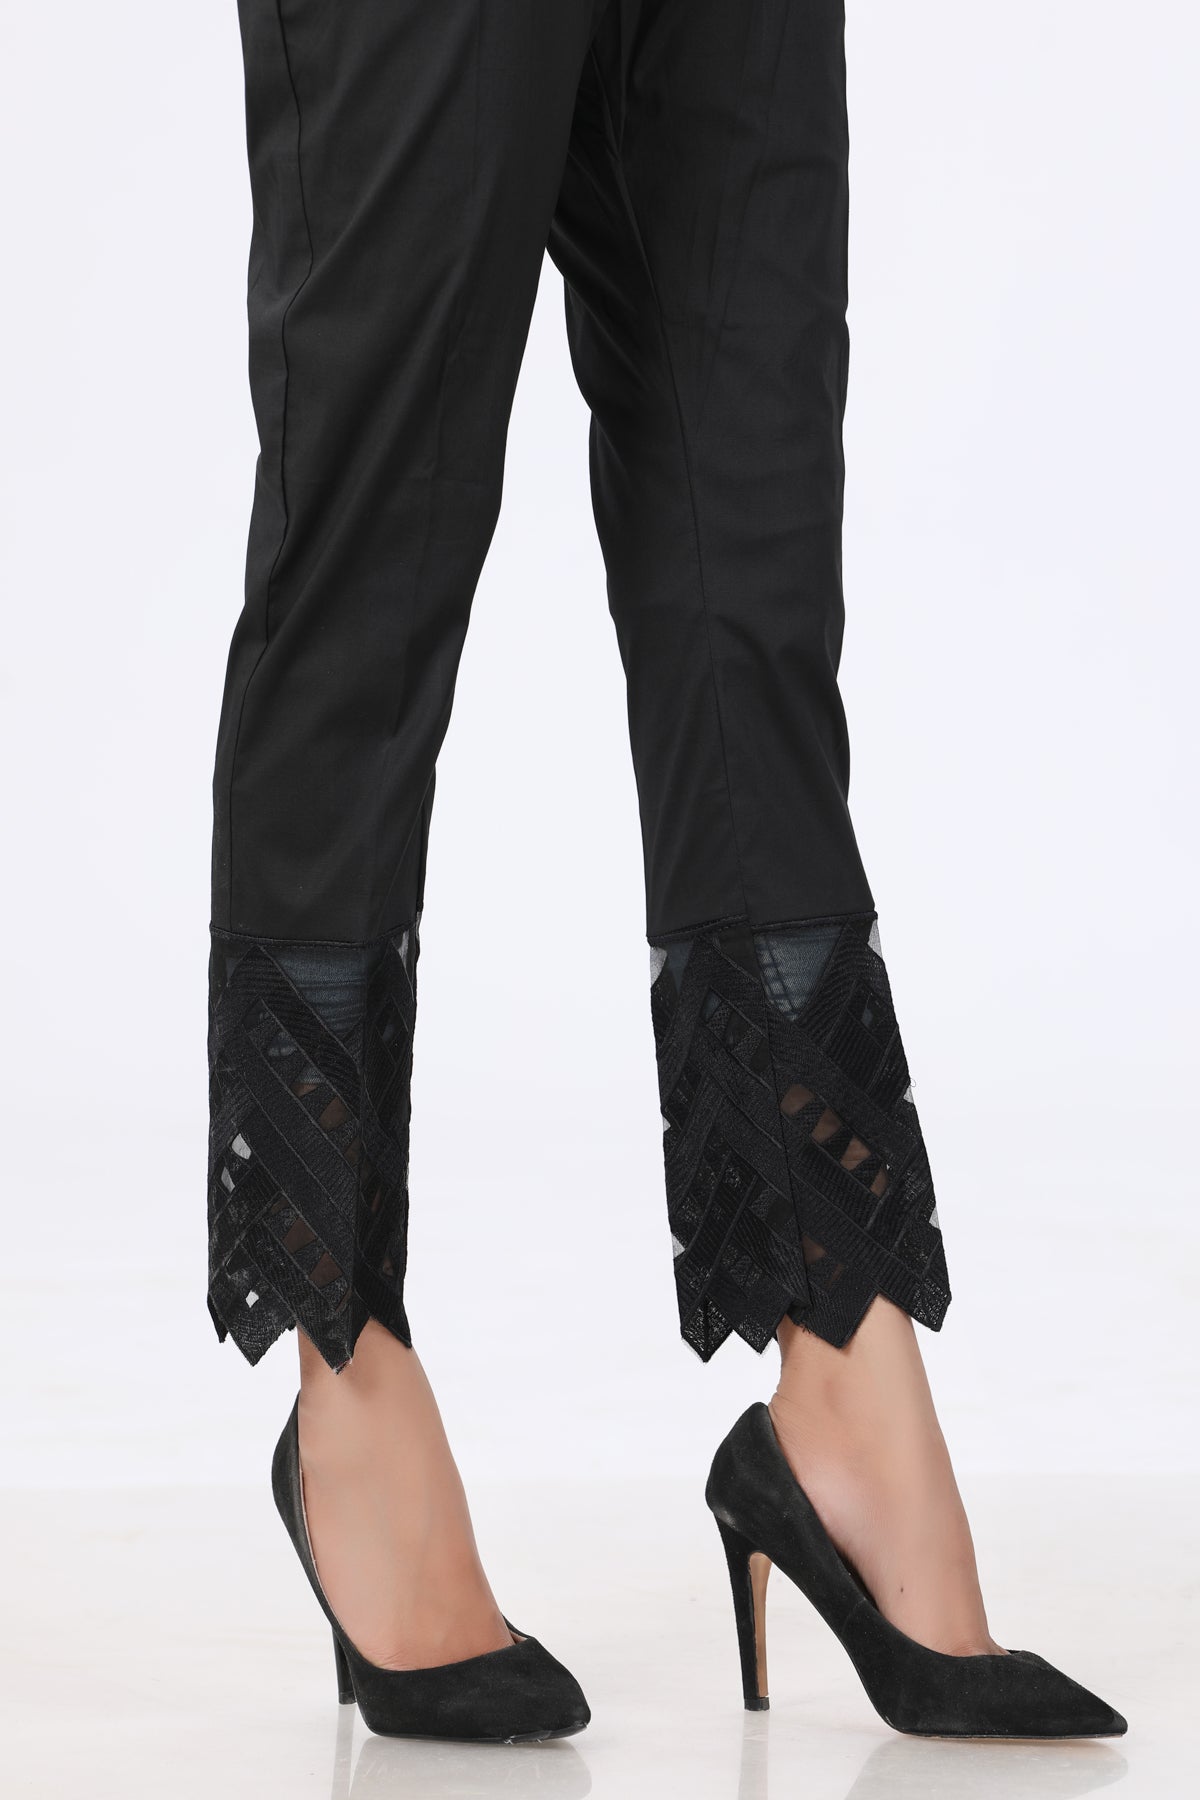 Black Lace Detail Trouser - Stonez